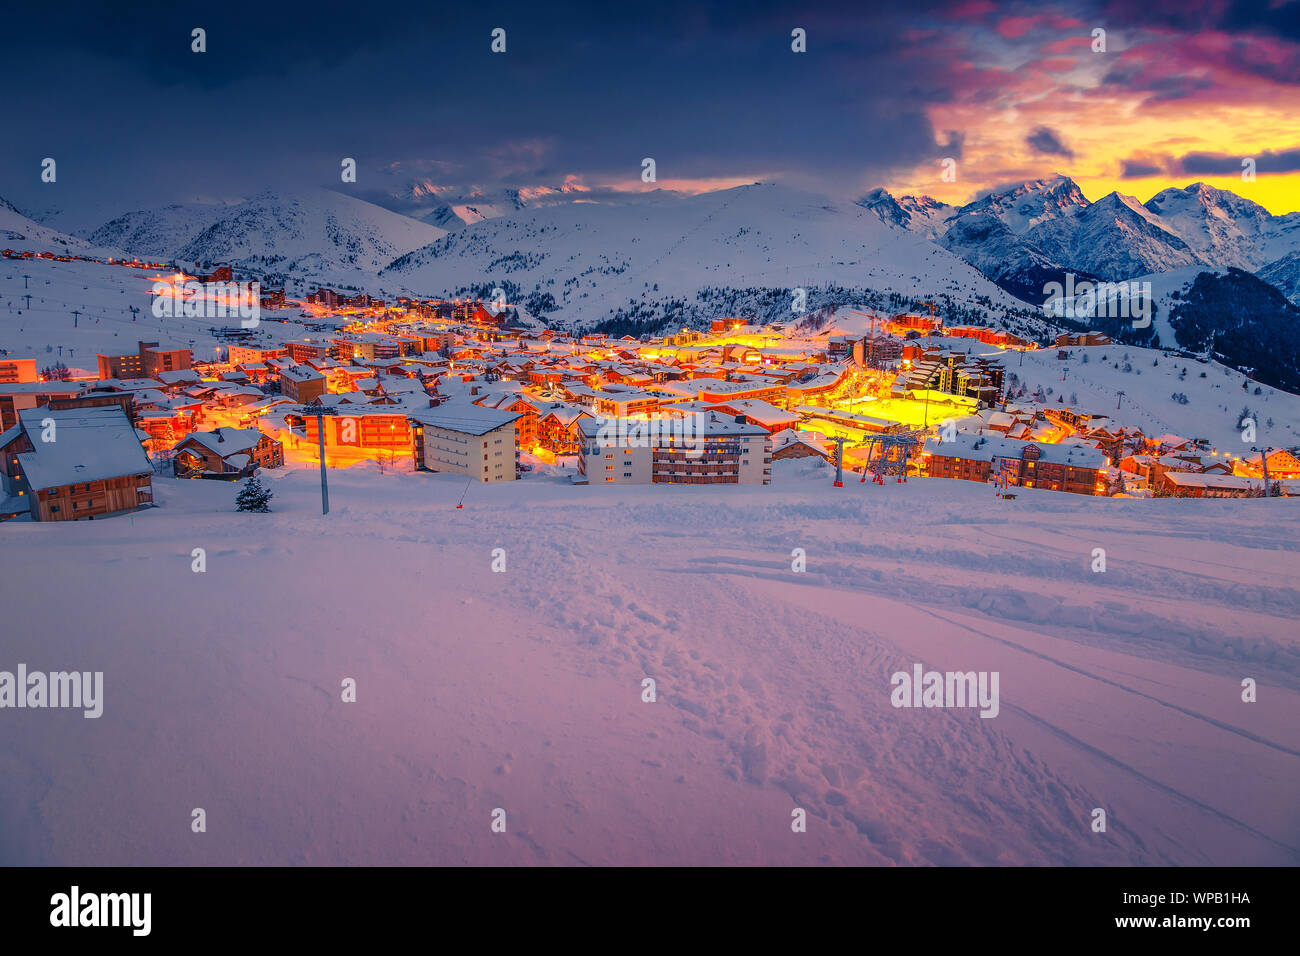 Famosi sport invernali e posizione di viaggio. Fantastica località sciistica invernale e fantastiche piste da sci con funivie al tramonto, Alpe d Huez, Francia, Europa Foto Stock